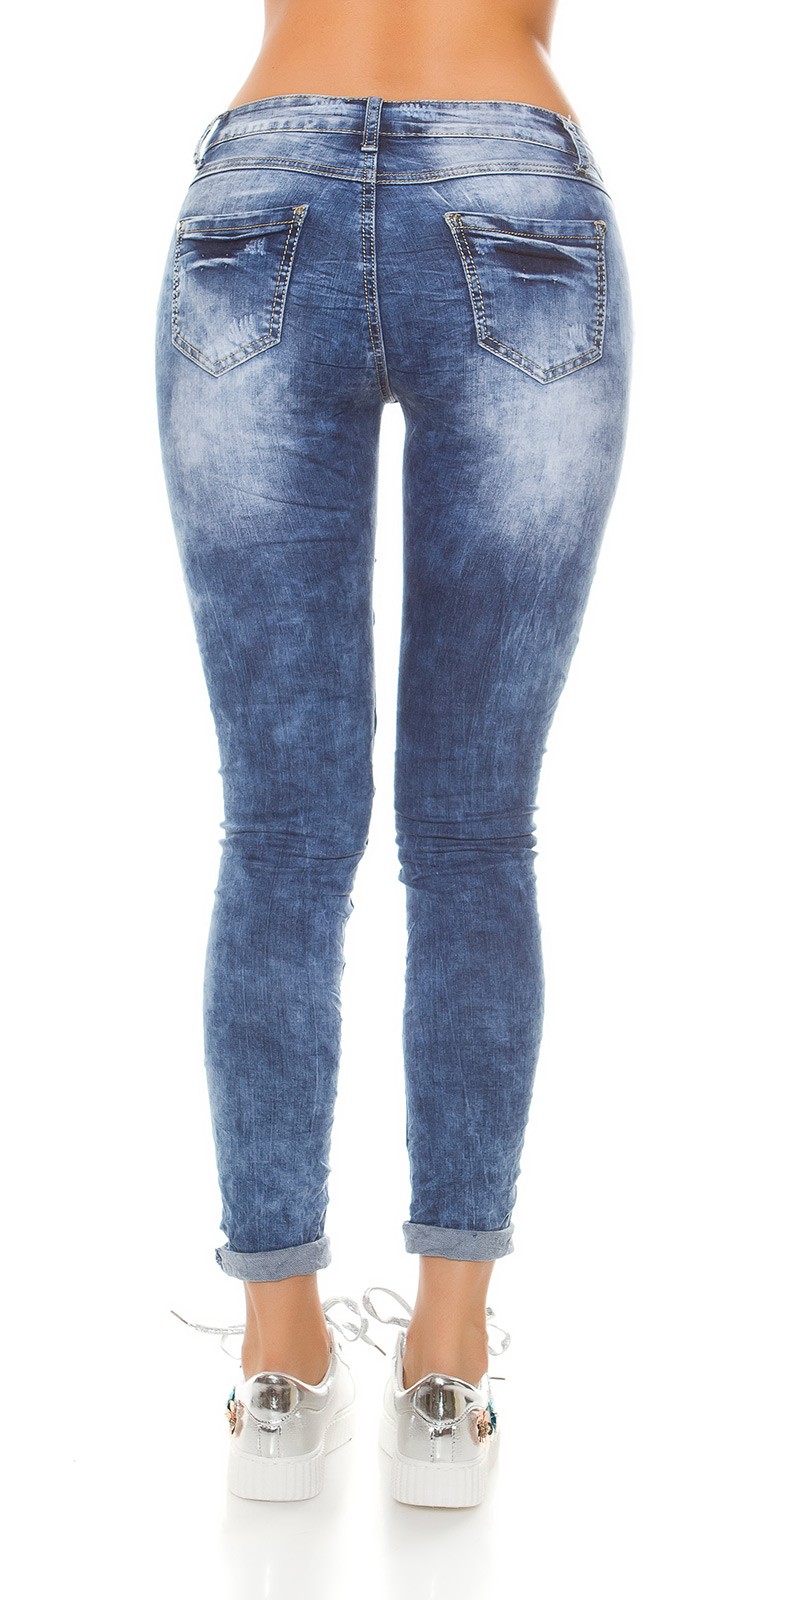 Jeans c/ cristais 1